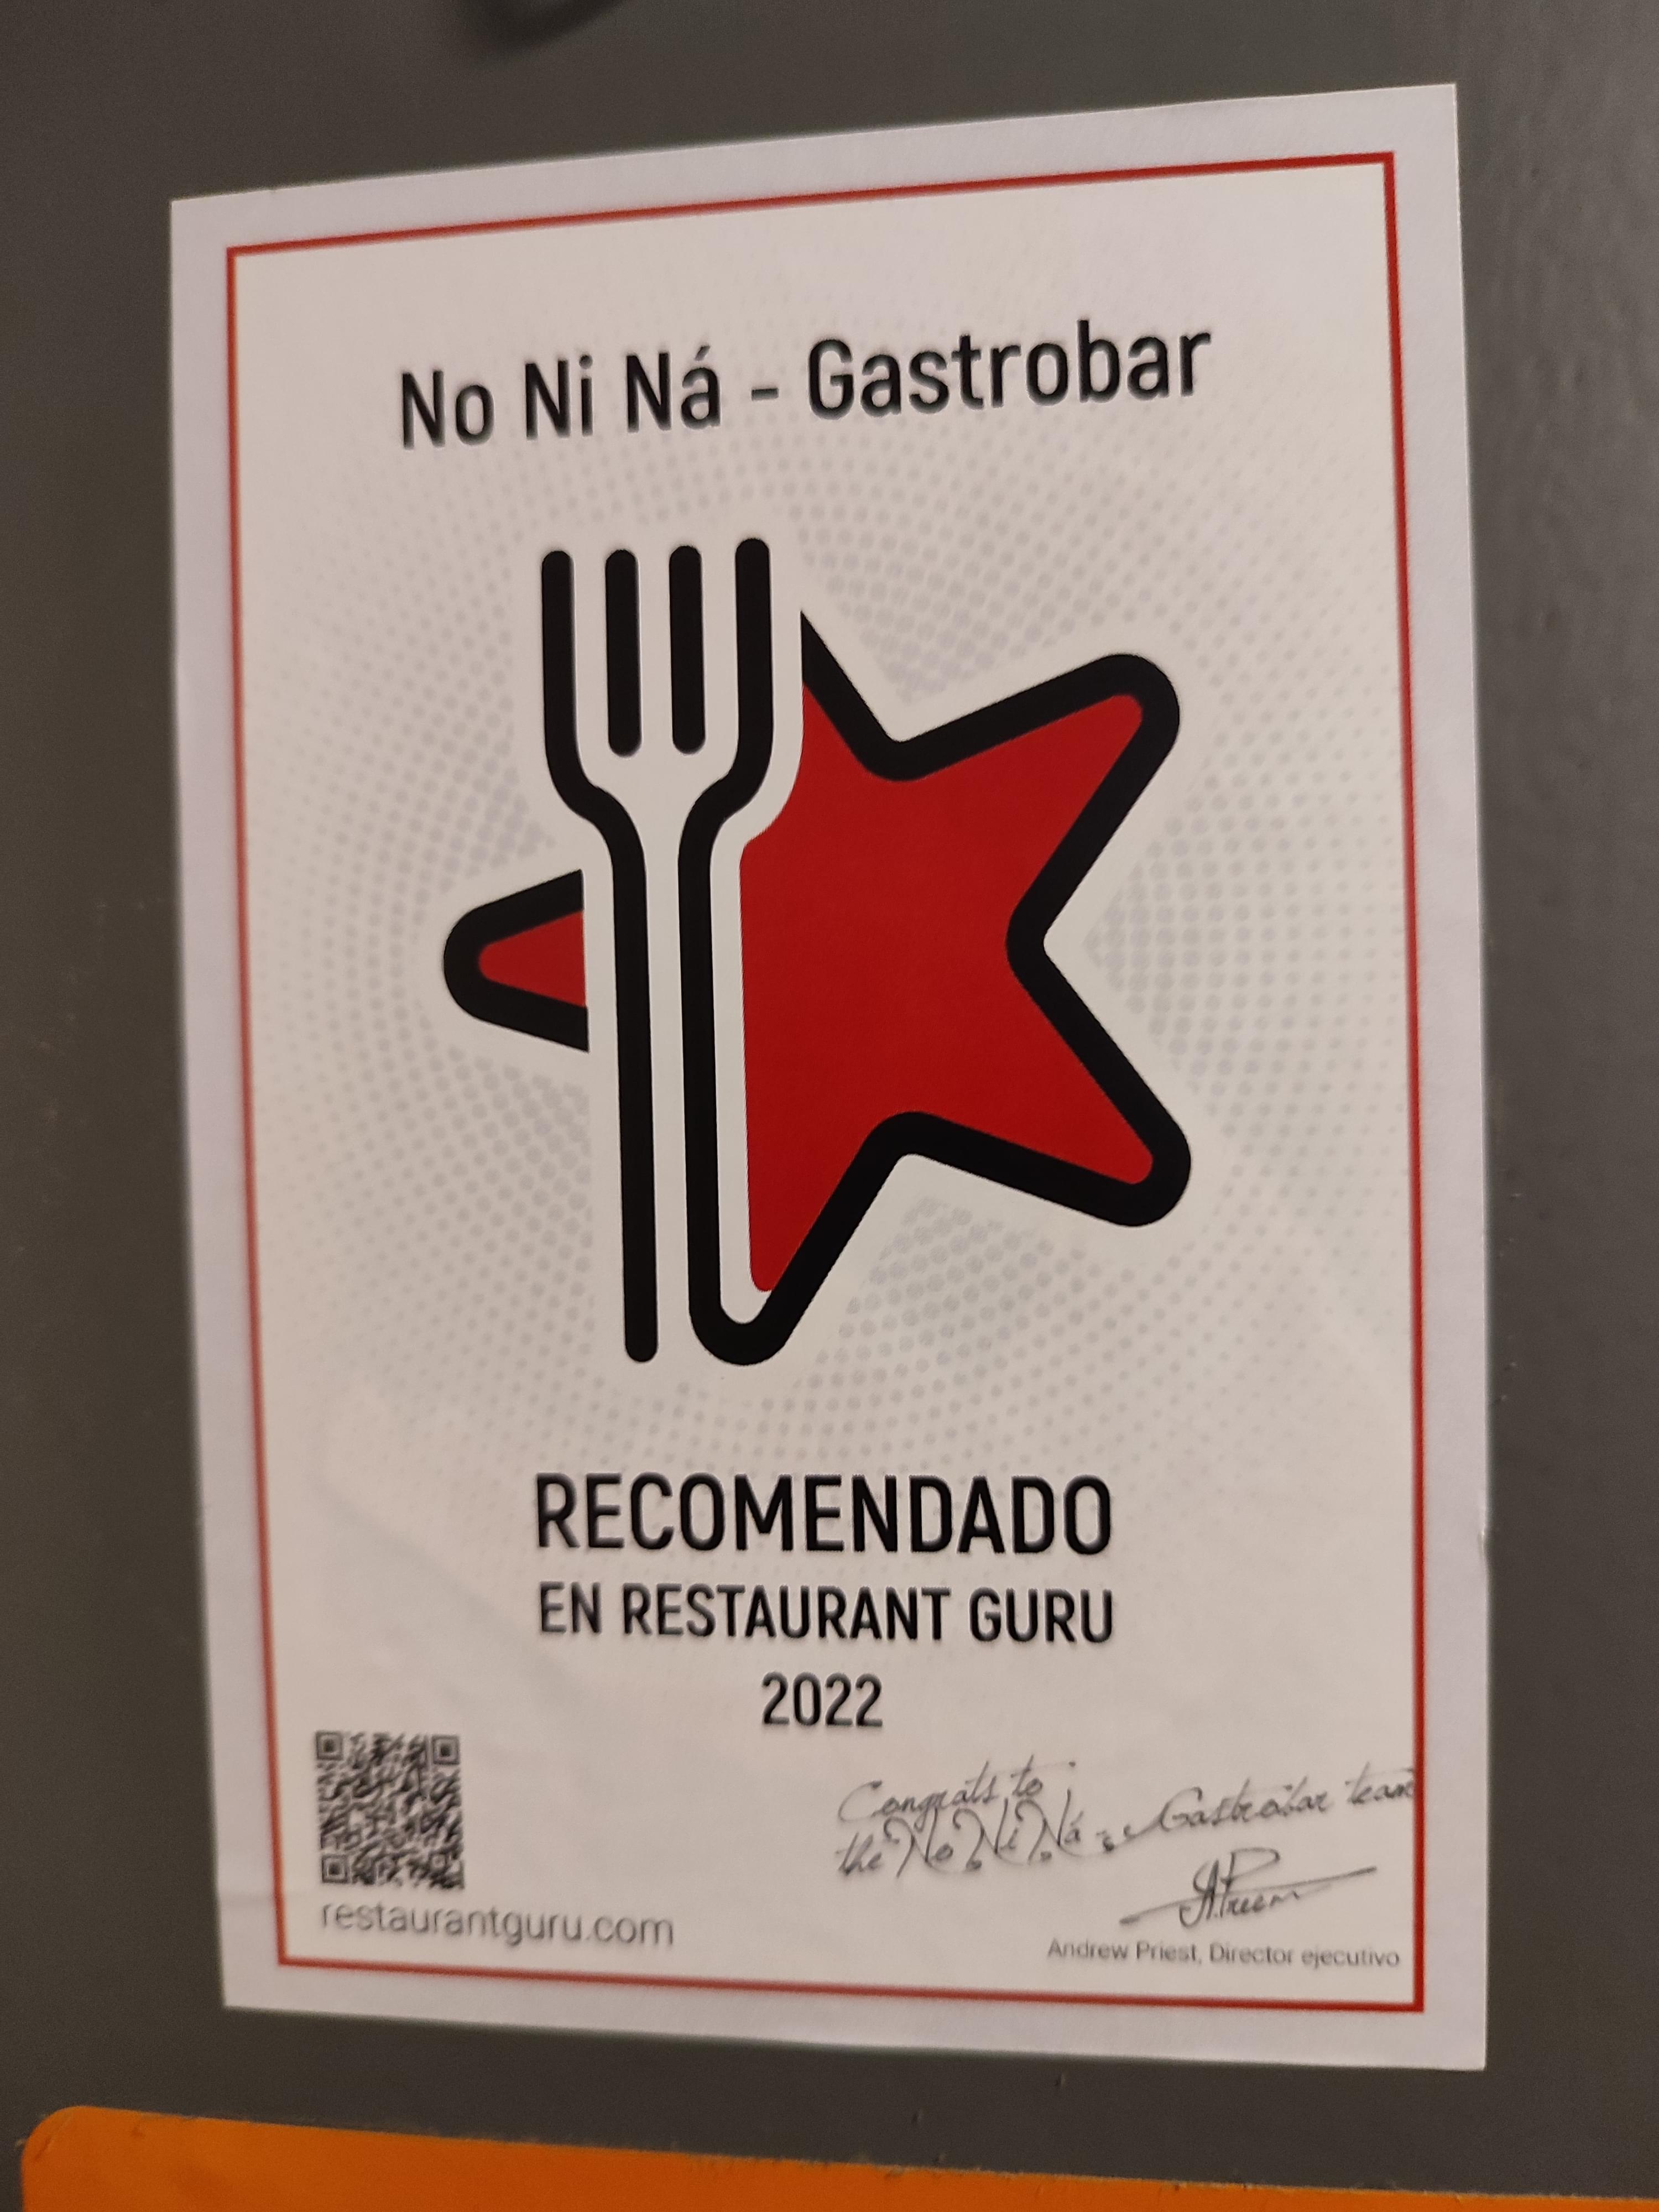 NO NI NÁ - GASTROBAR award